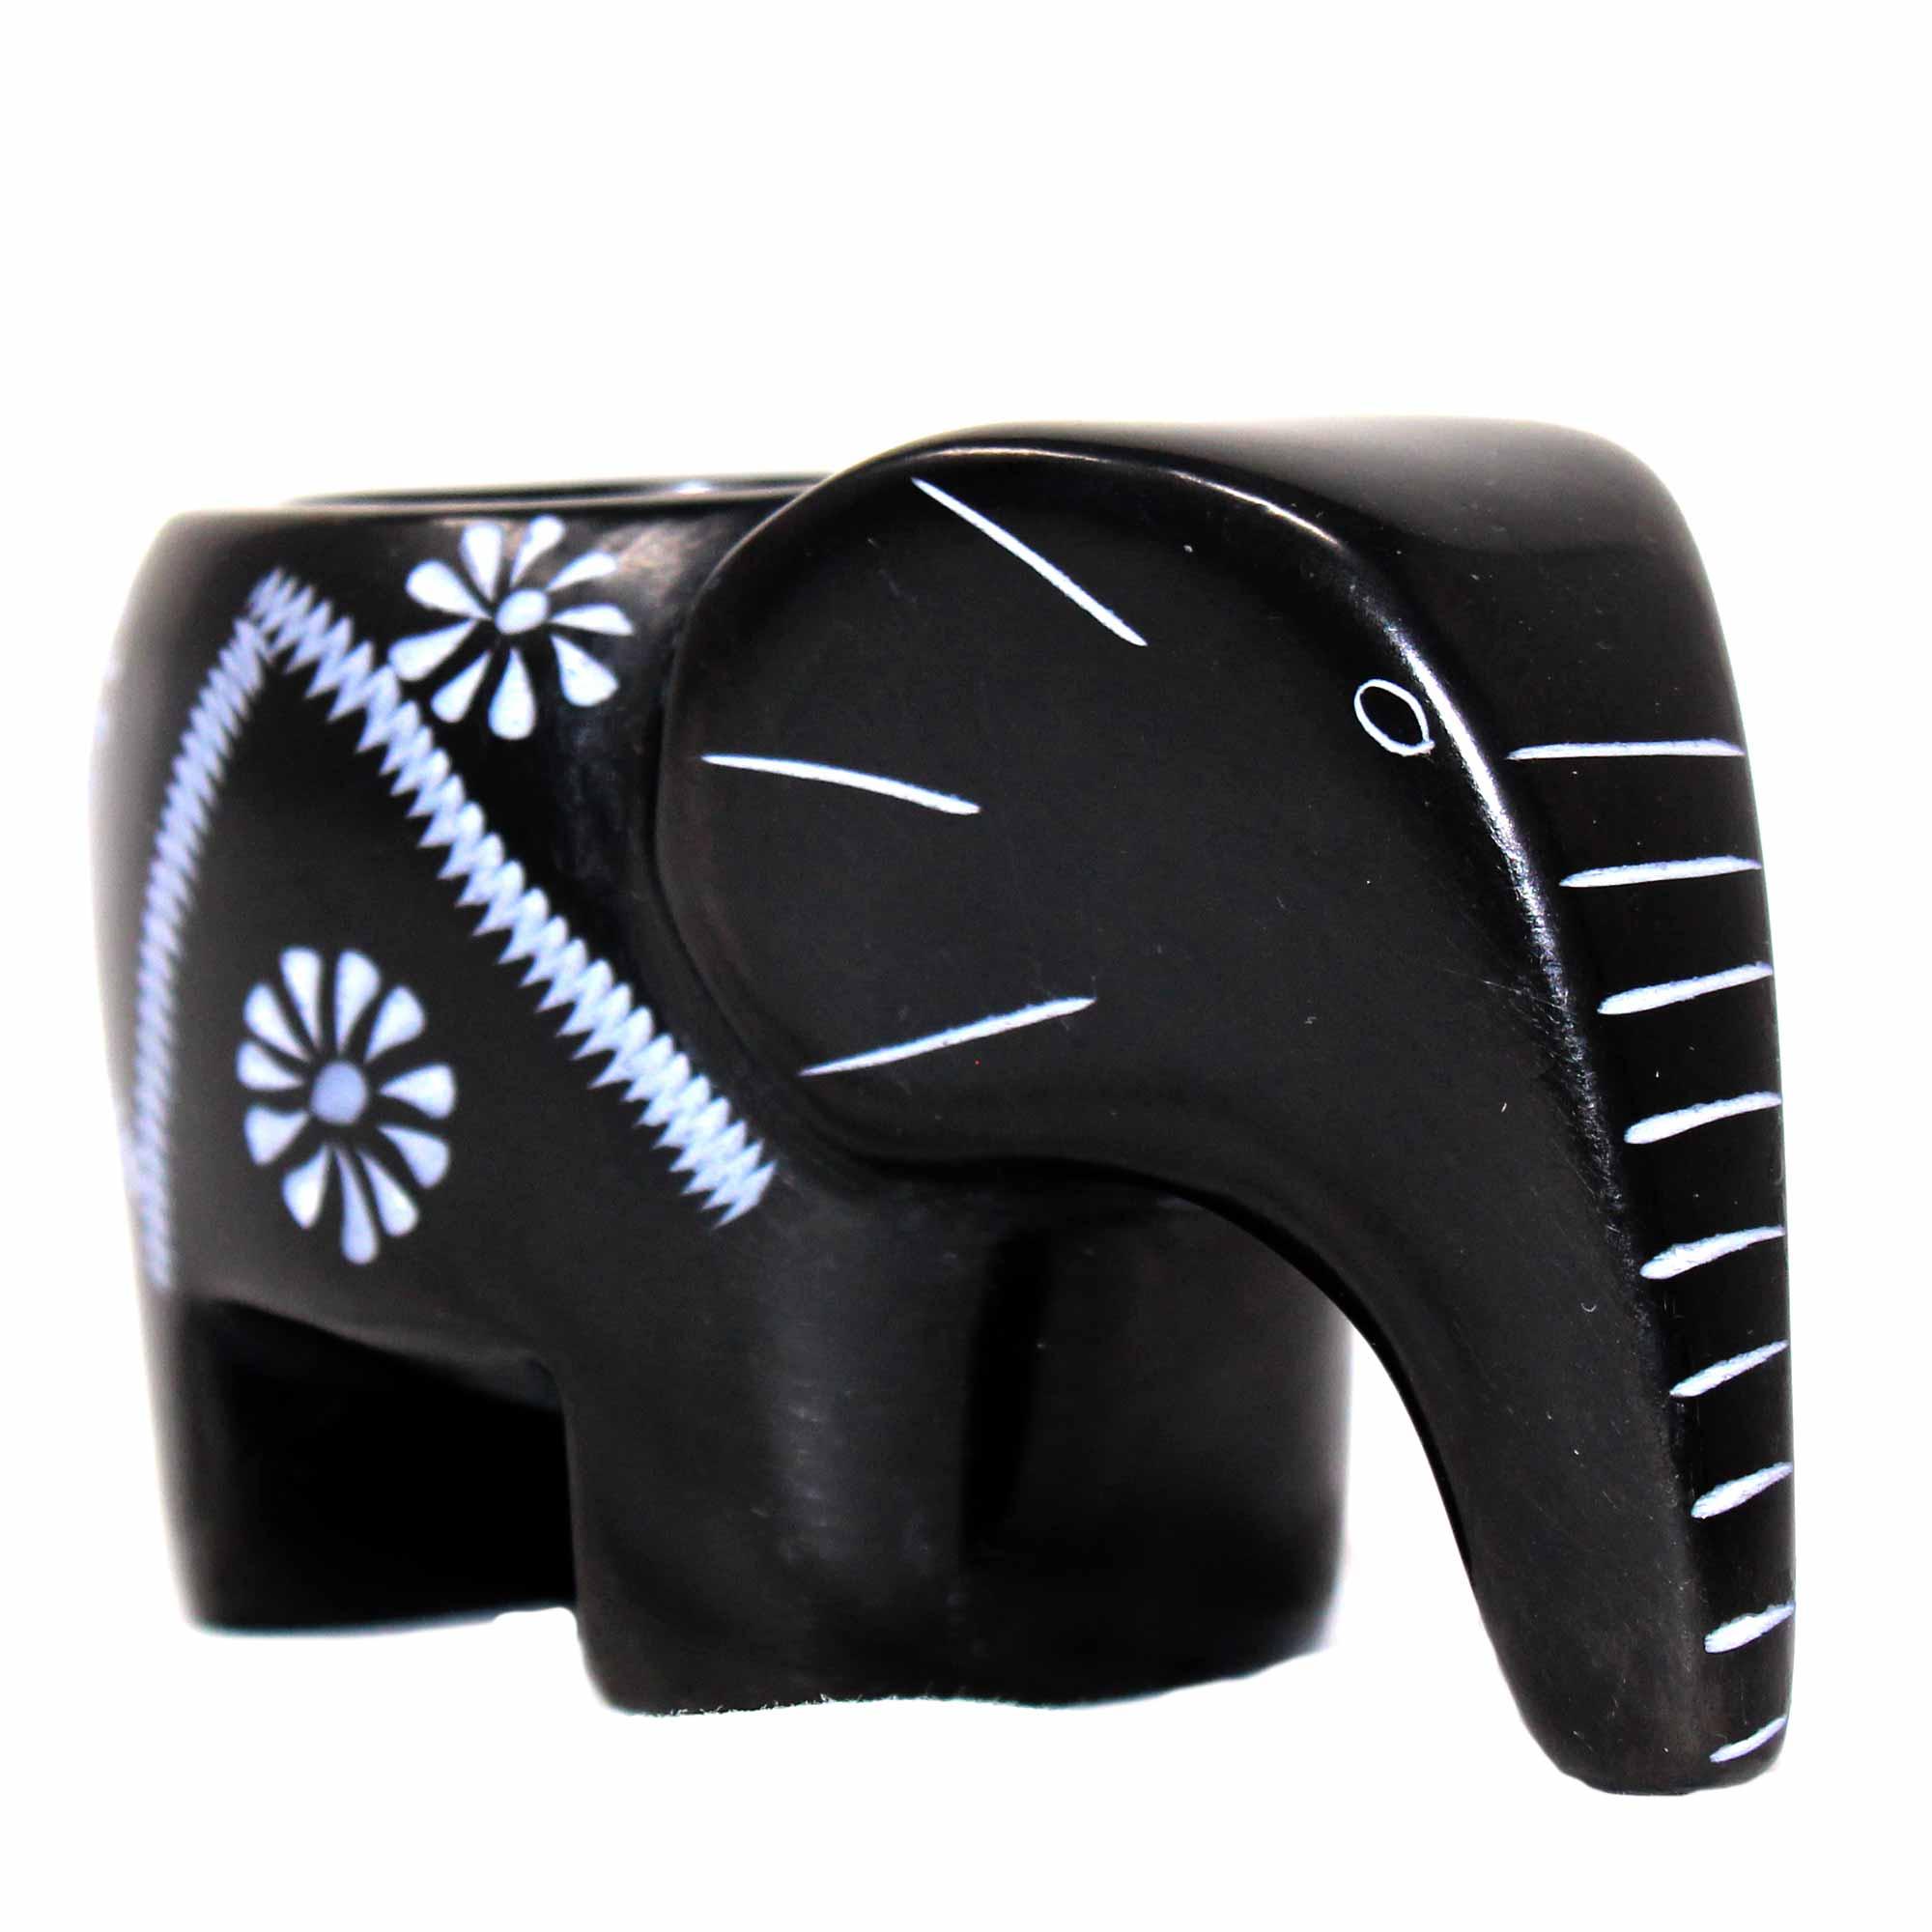 Elephant Soapstone Tea Light - Black Finish with Etch Design - Flyclothing LLC